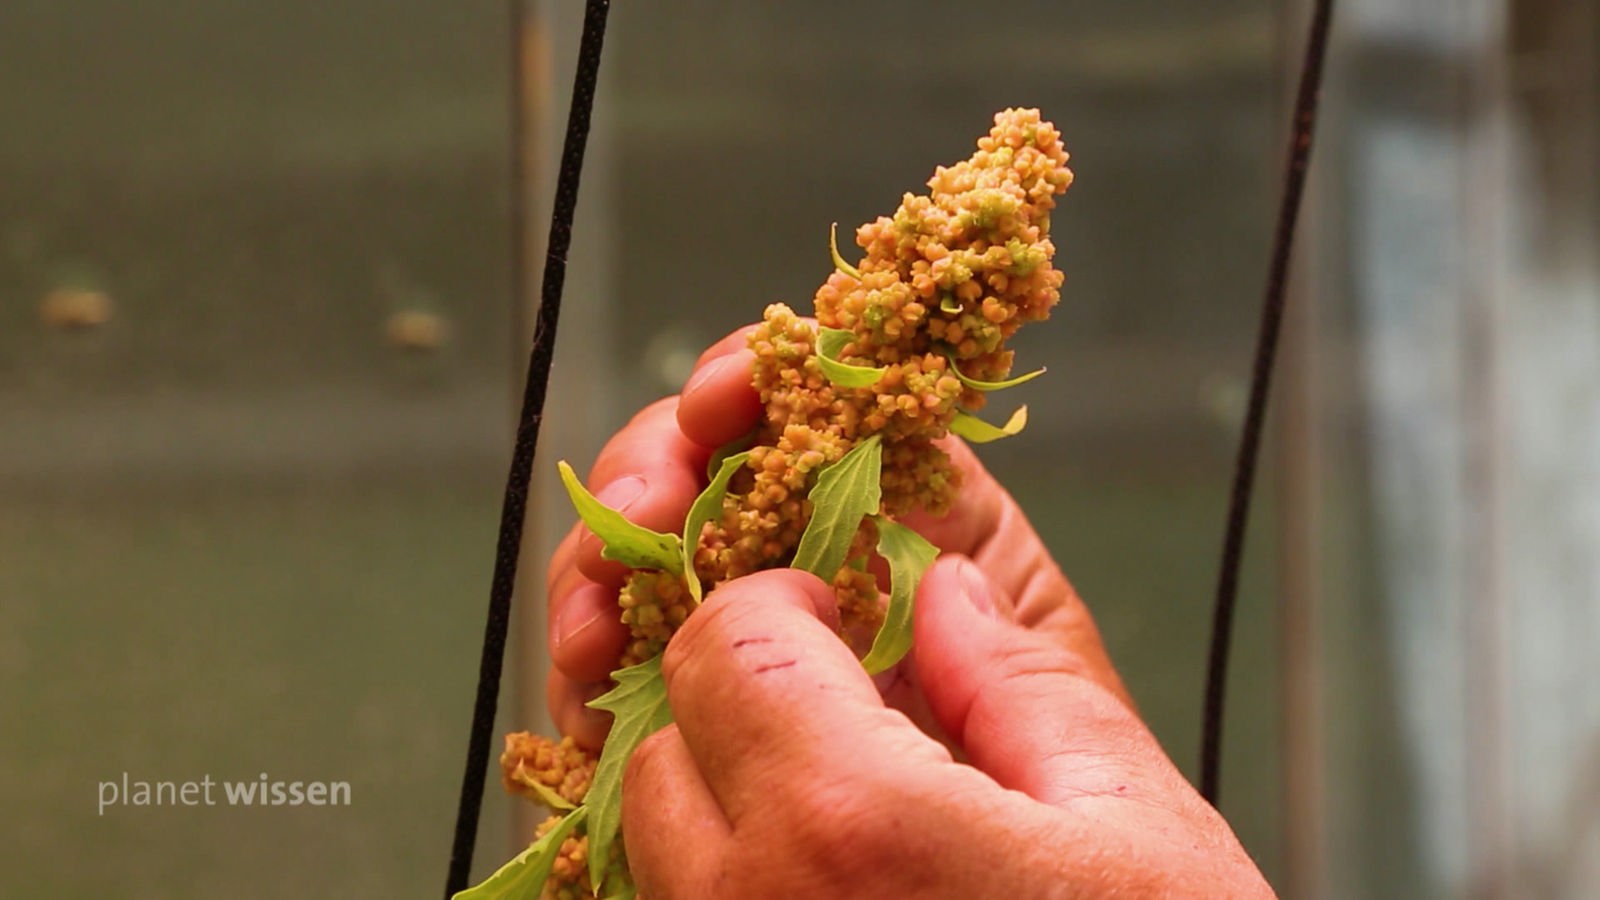 Laborsituation: Hände an der Blüte einer Quinoapflanze.